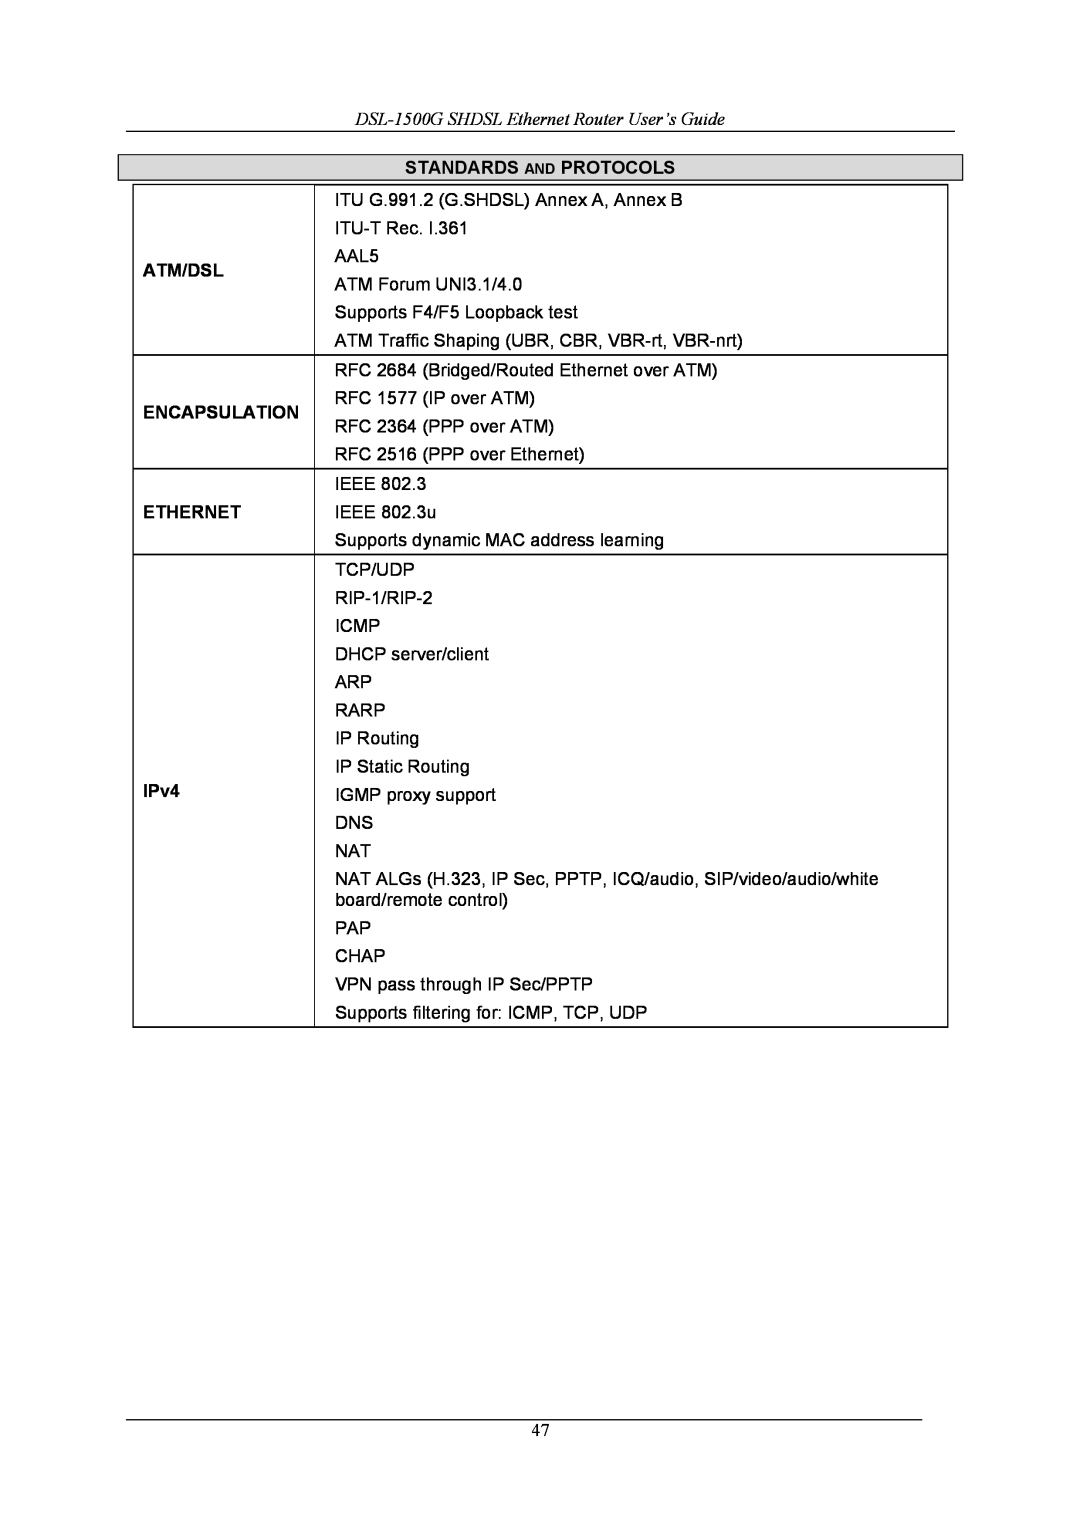 D-Link manual DSL-1500G SHDSL Ethernet Router User’s Guide, Standards And Protocols, Atm/Dsl, Encapsulation, IPv4 